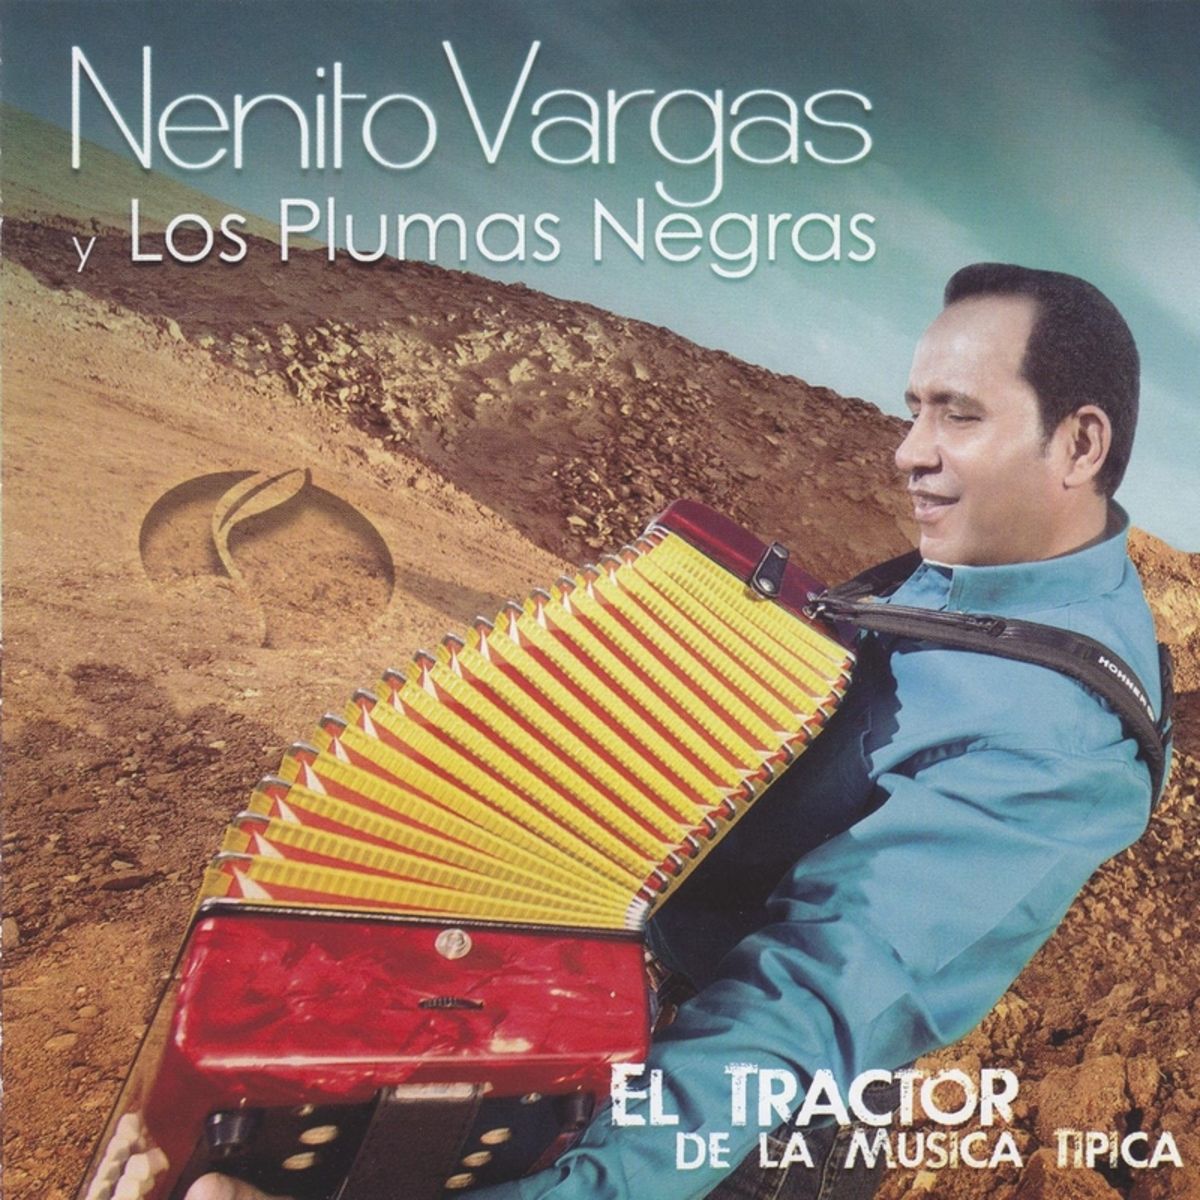 8 - Nenito Vargas y los Plumas Negras - Amor Eterno.mp3